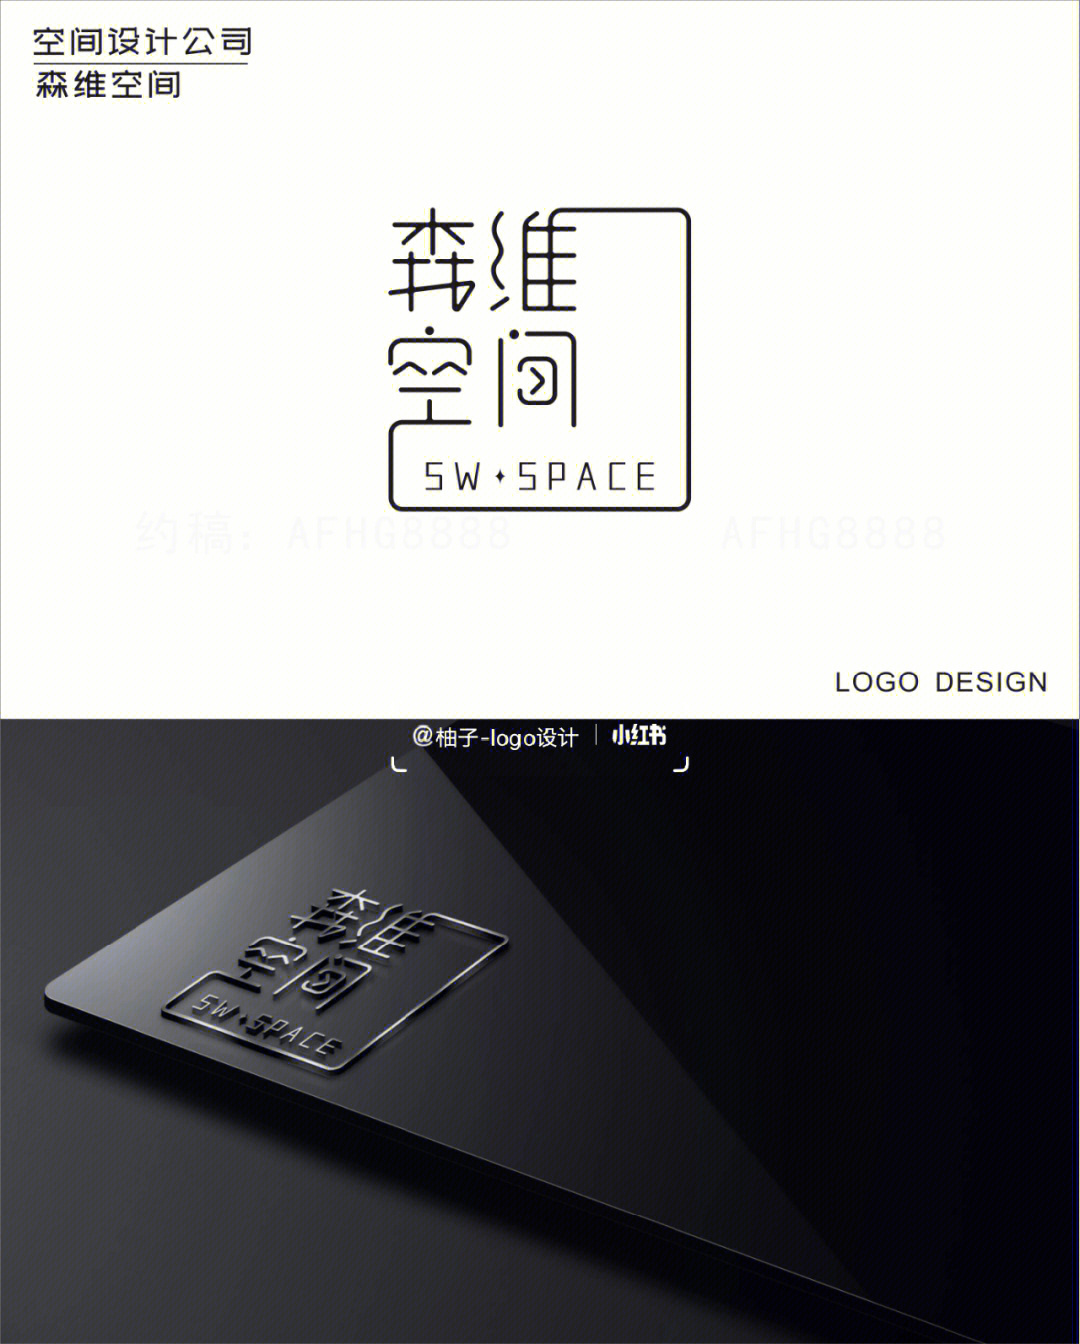 空间设计公司logo原创字体设计